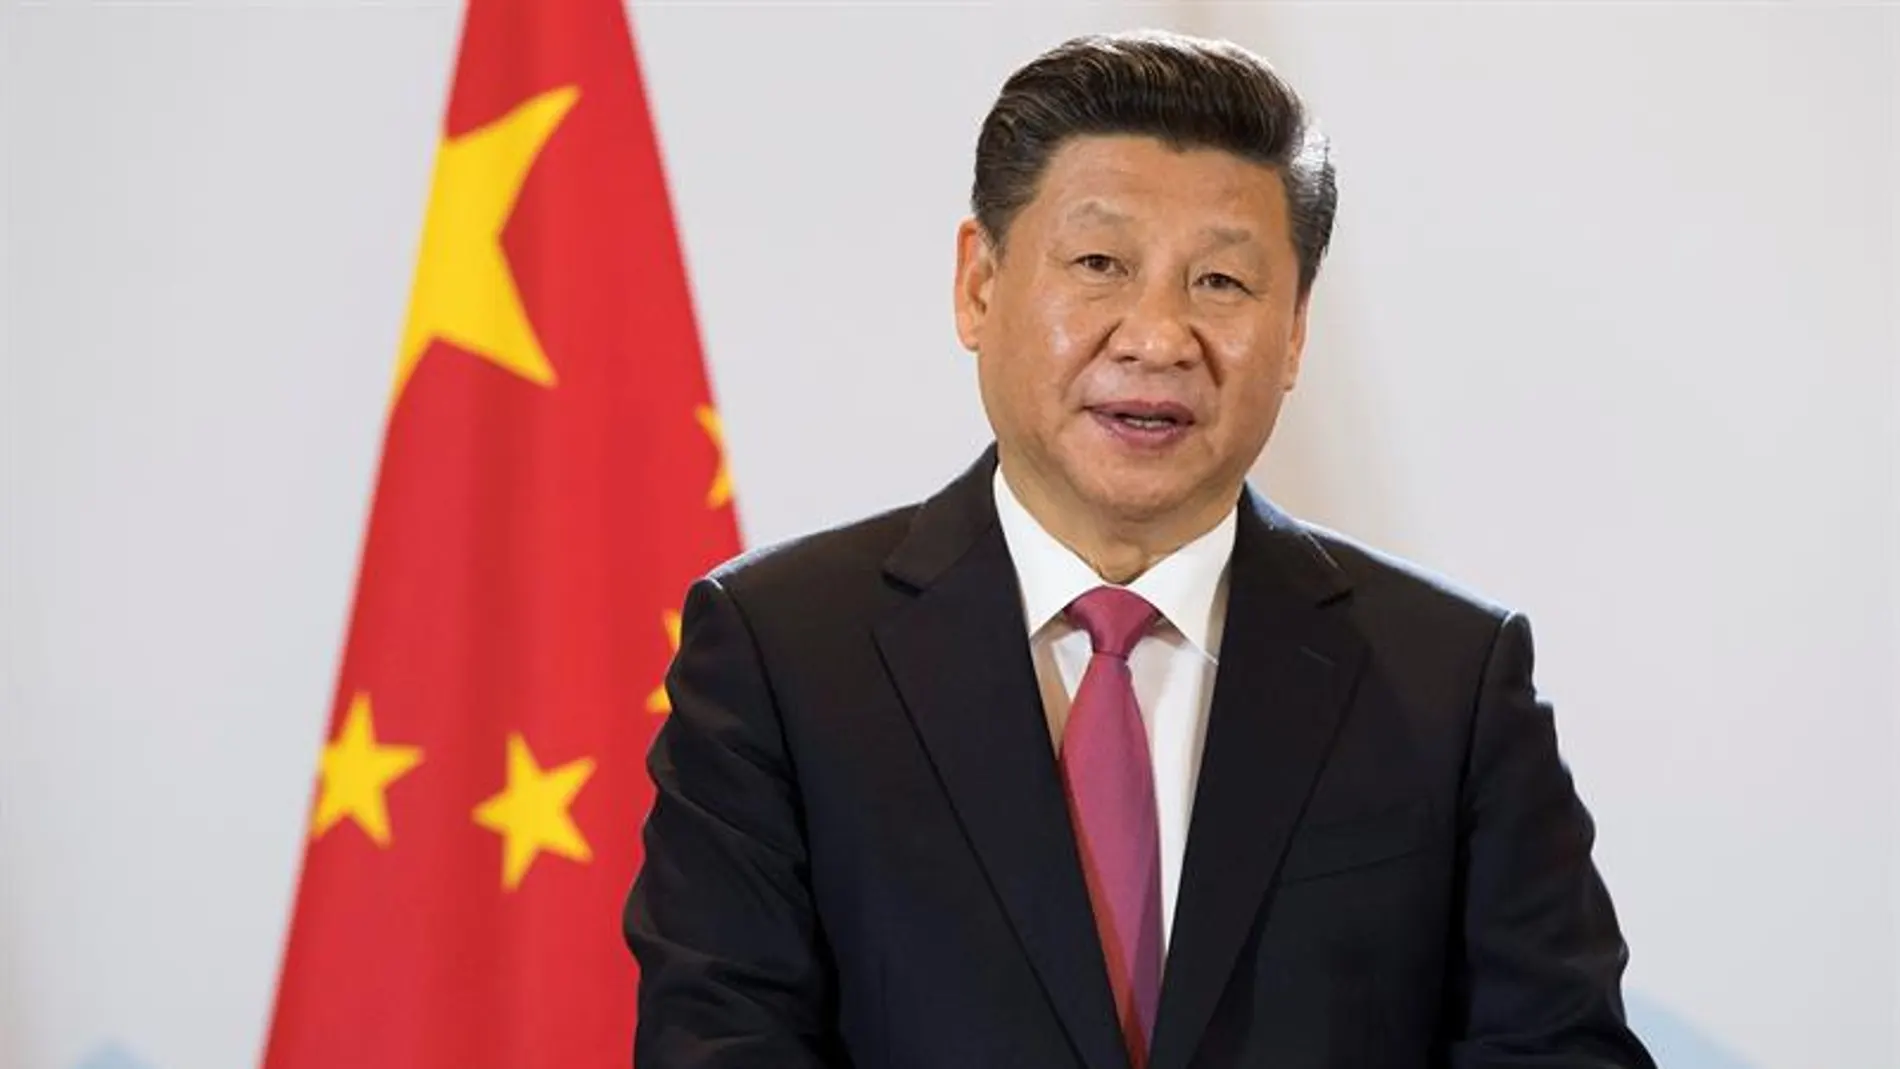 El presidente chino, Xi Jinping, da una rueda de prensa en Berna (Suiza)